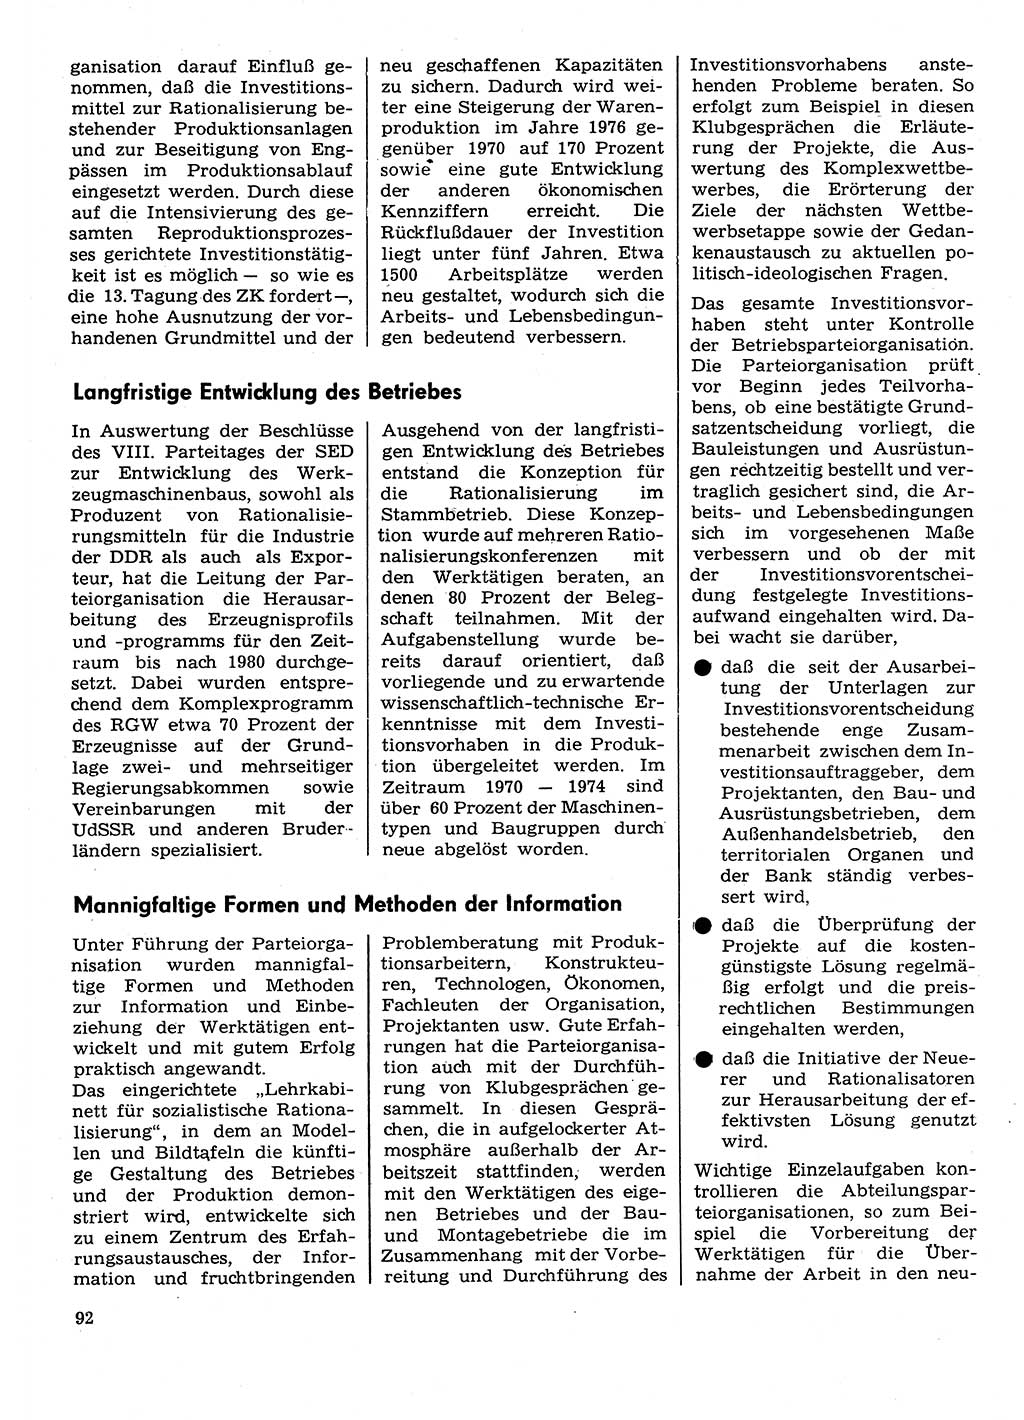 Neuer Weg (NW), Organ des Zentralkomitees (ZK) der SED (Sozialistische Einheitspartei Deutschlands) für Fragen des Parteilebens, 30. Jahrgang [Deutsche Demokratische Republik (DDR)] 1975, Seite 92 (NW ZK SED DDR 1975, S. 92)